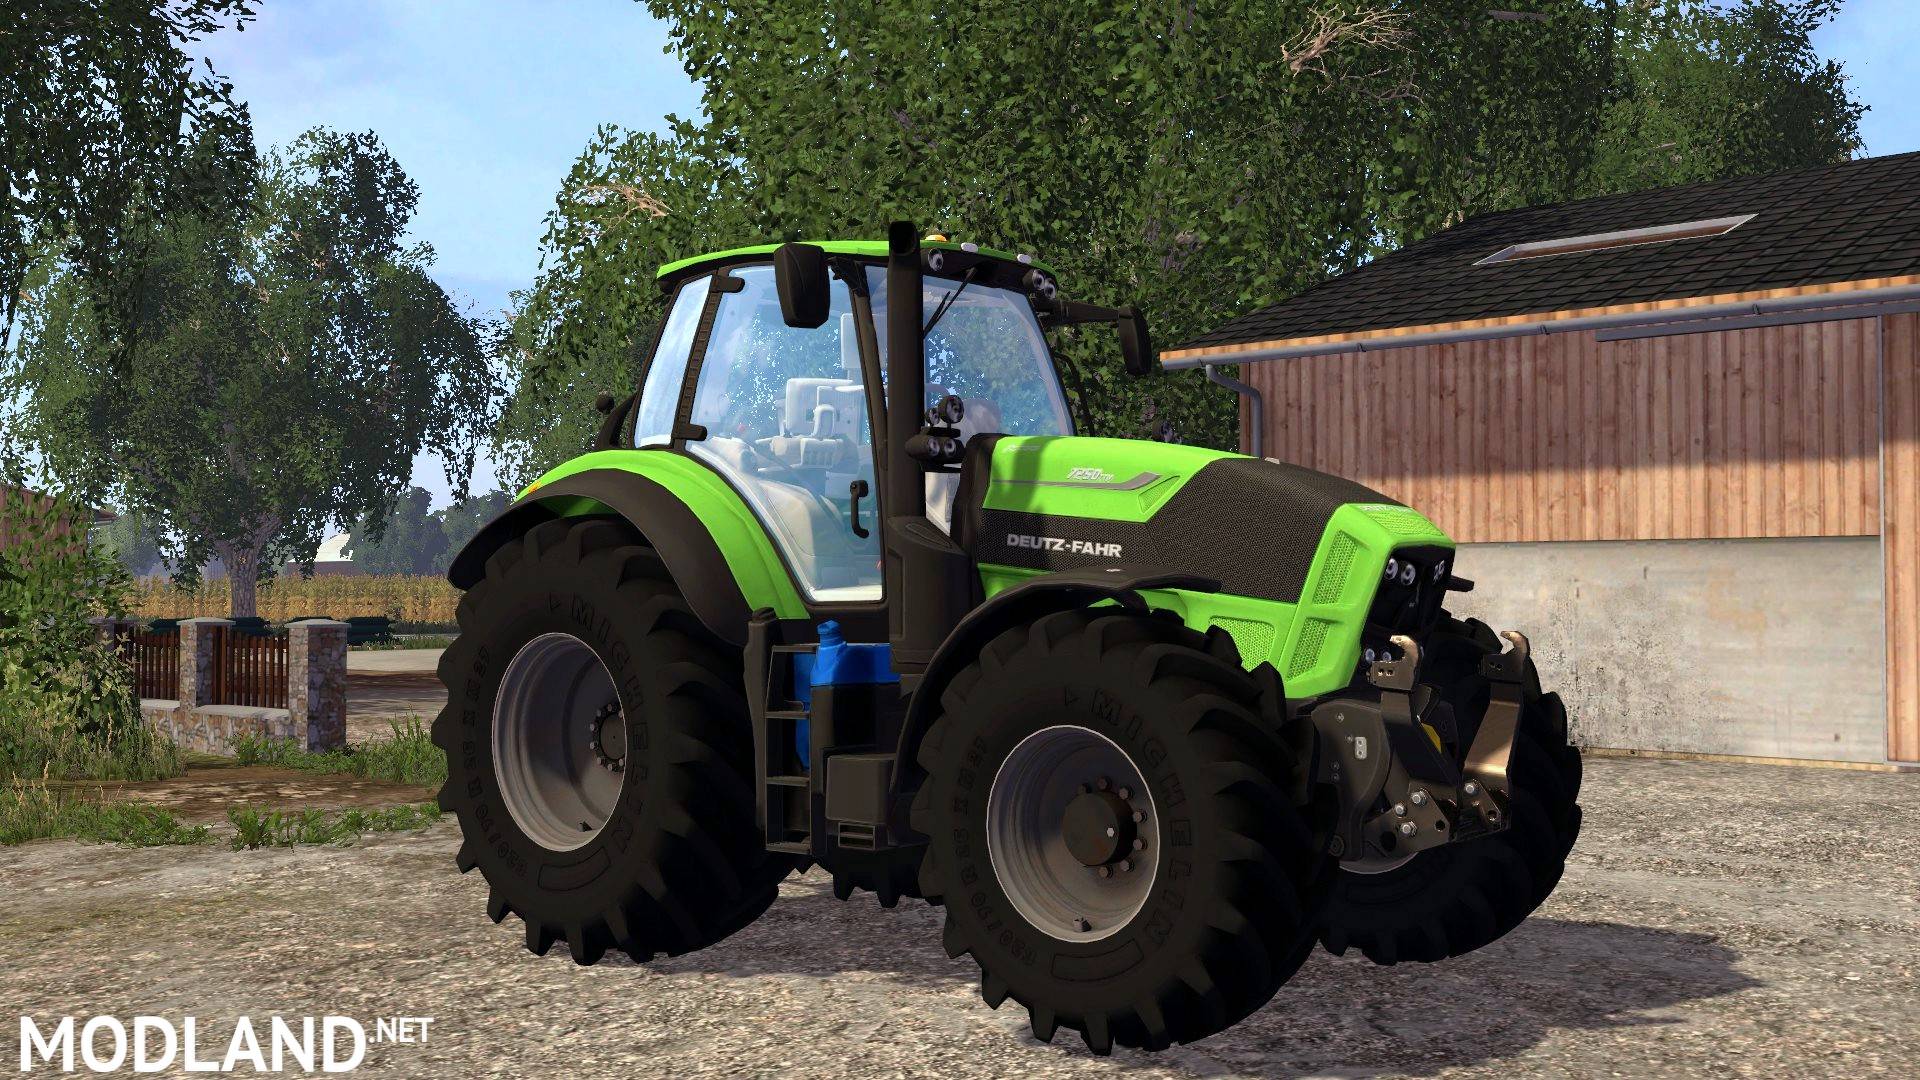 Deutz Fahr TTV 7250 v 3.6 mod for Farming Simulator 2015 / 15. FS